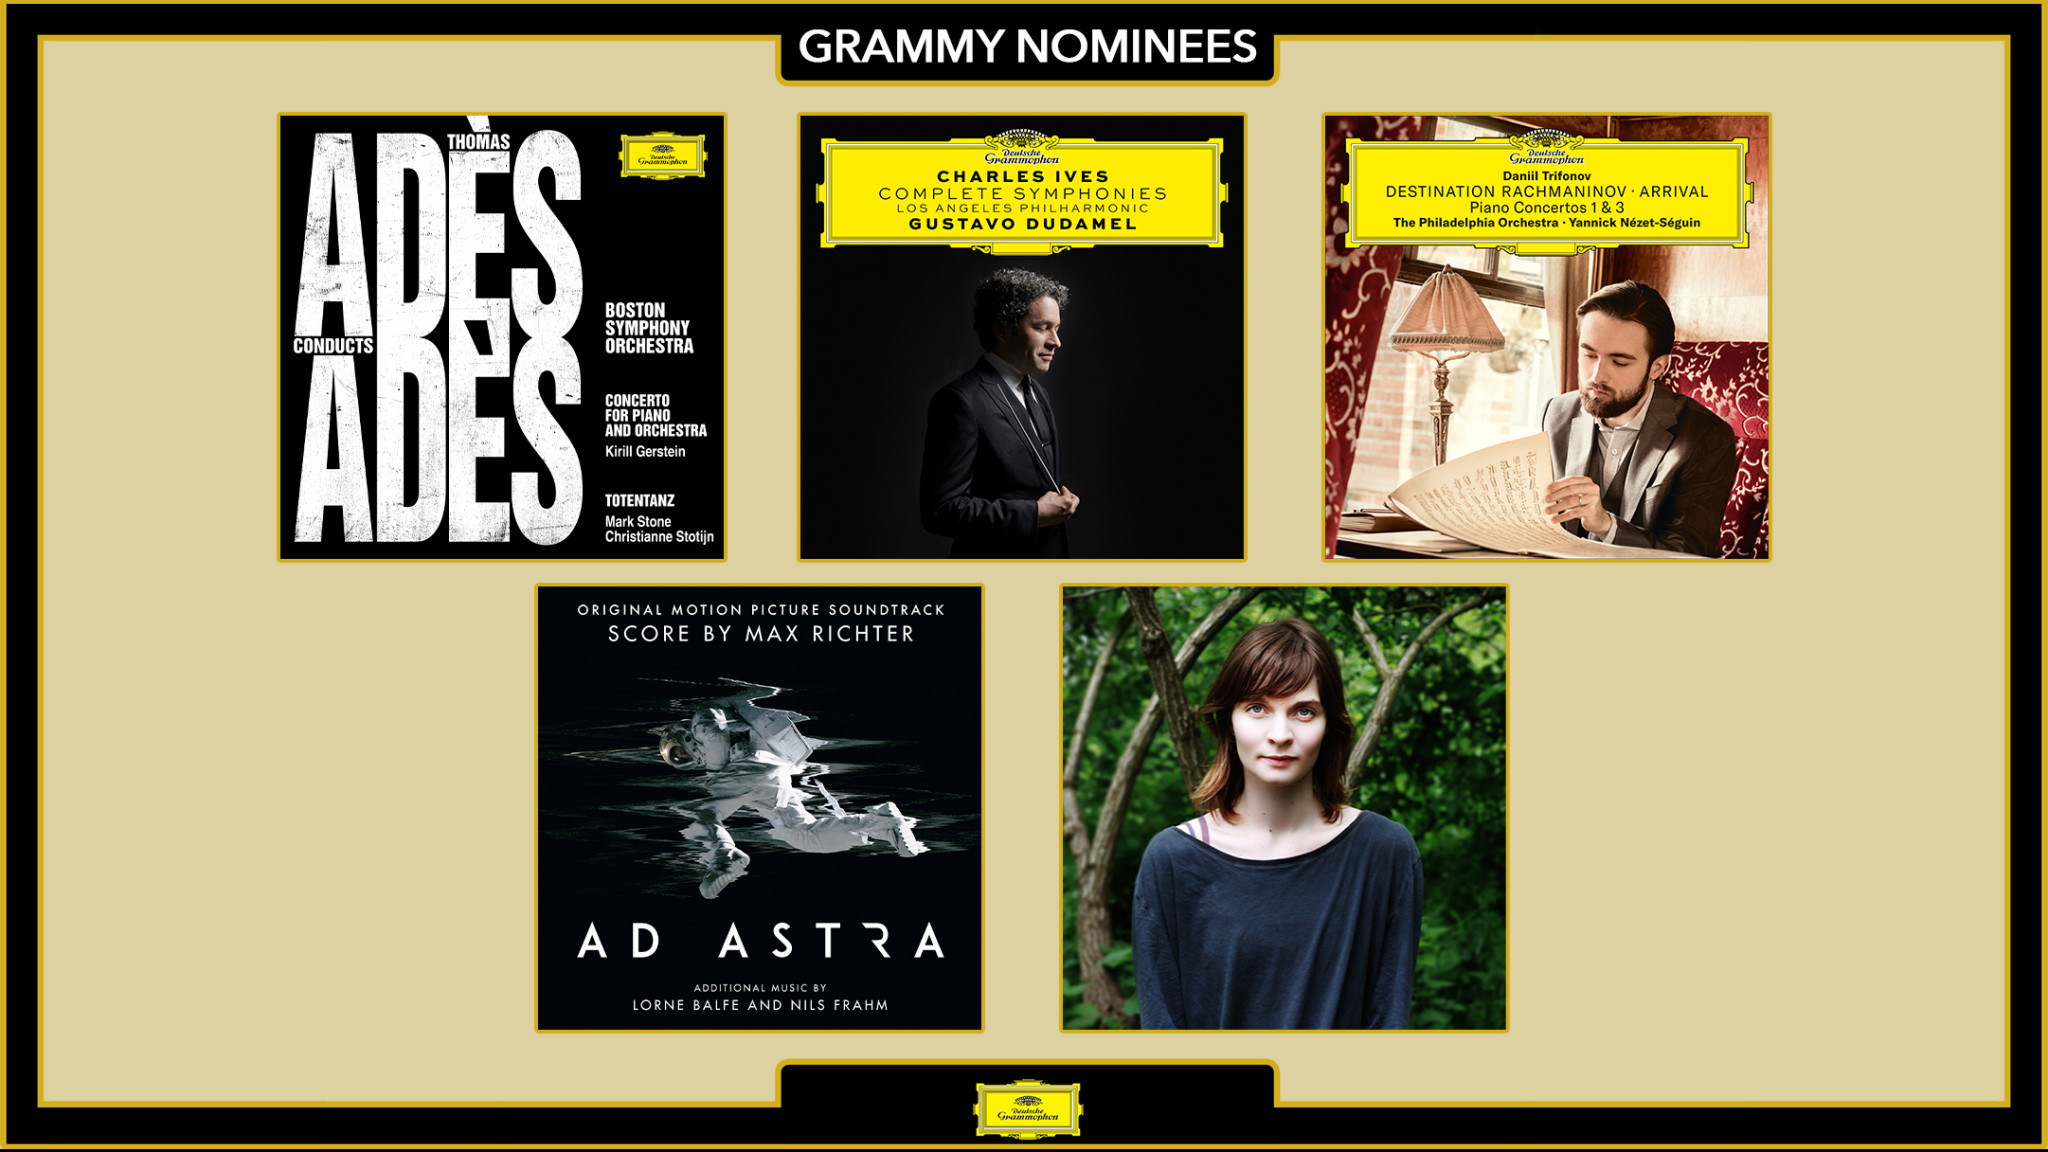 Deutsche Grammophon Grammy Nominees 2020